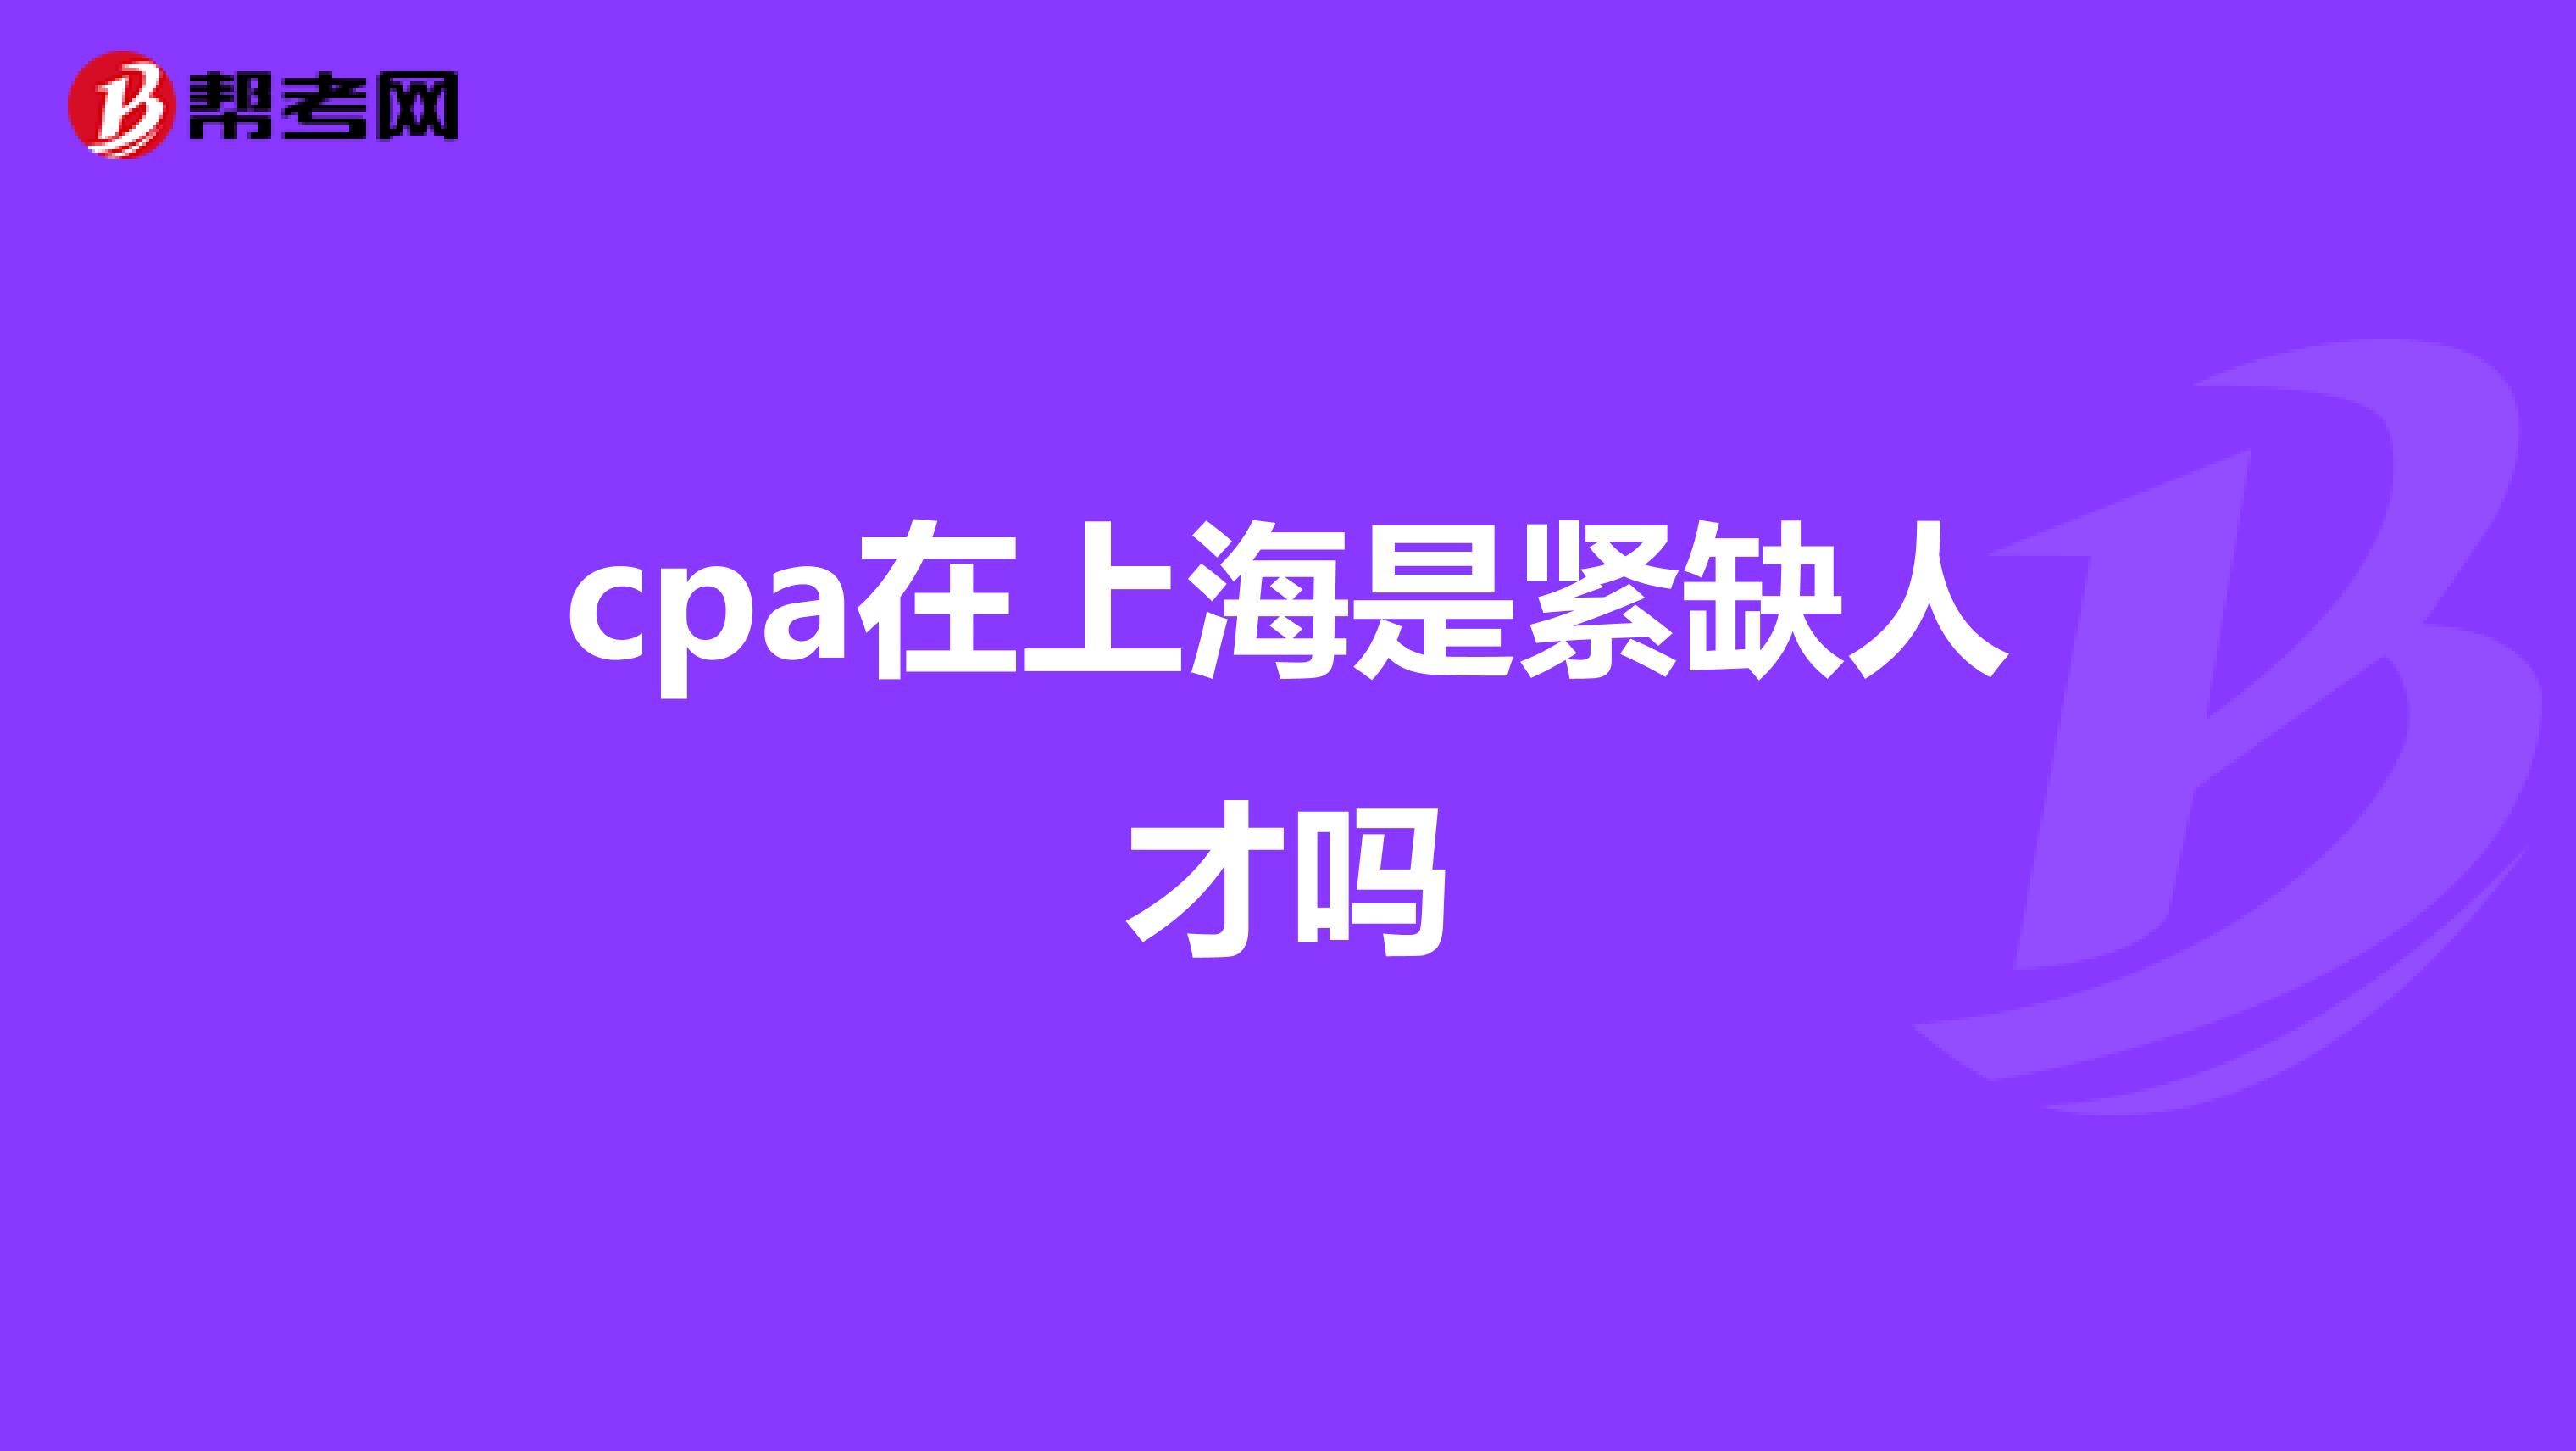 cpa在上海是紧缺人才吗